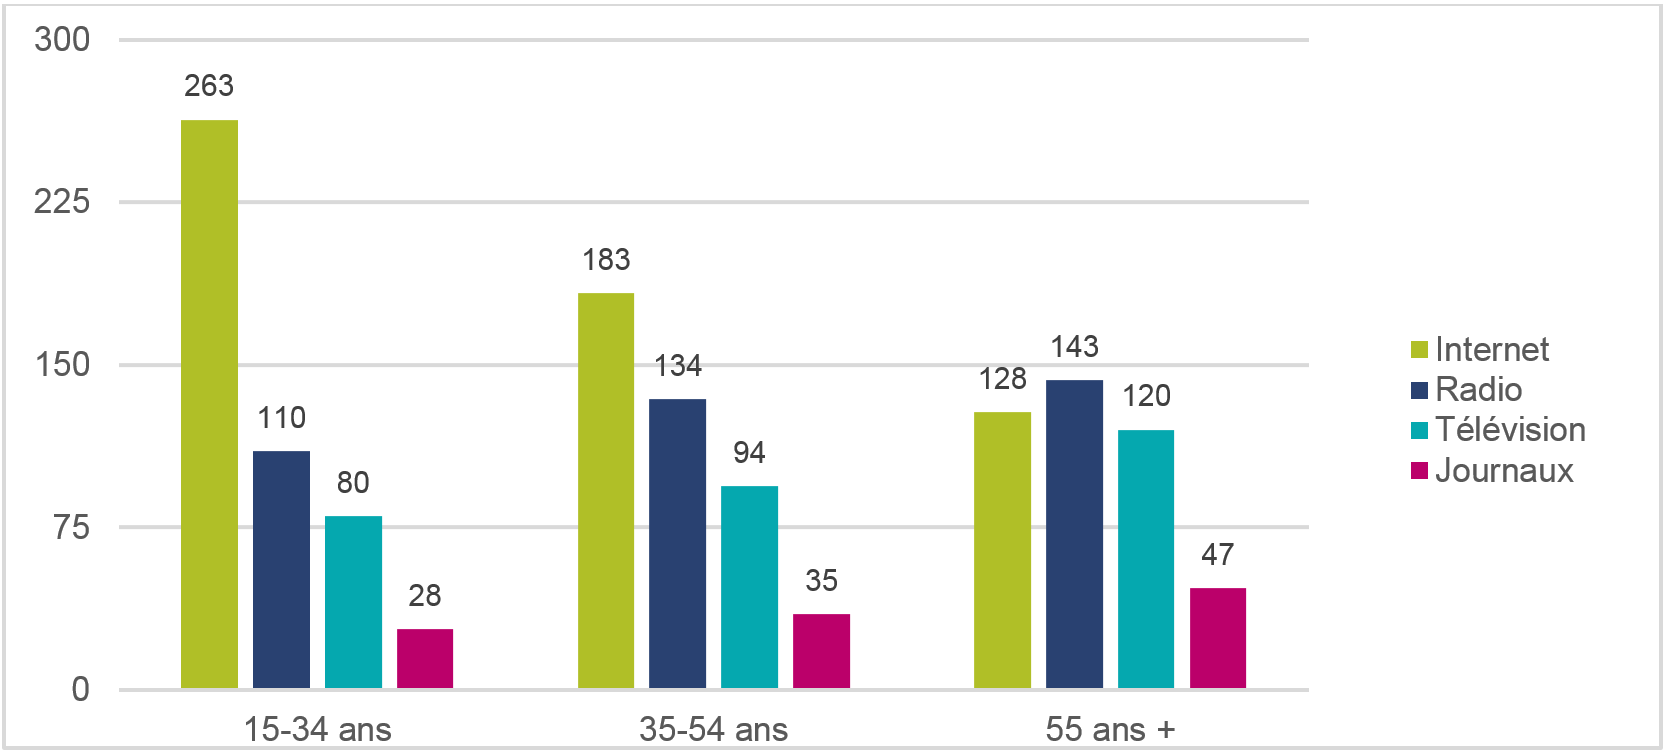 Utilisation quotidienne moyenne de l'internet, de la radio, de la télévision et des journaux, selon l'âge, en minutes (2015)